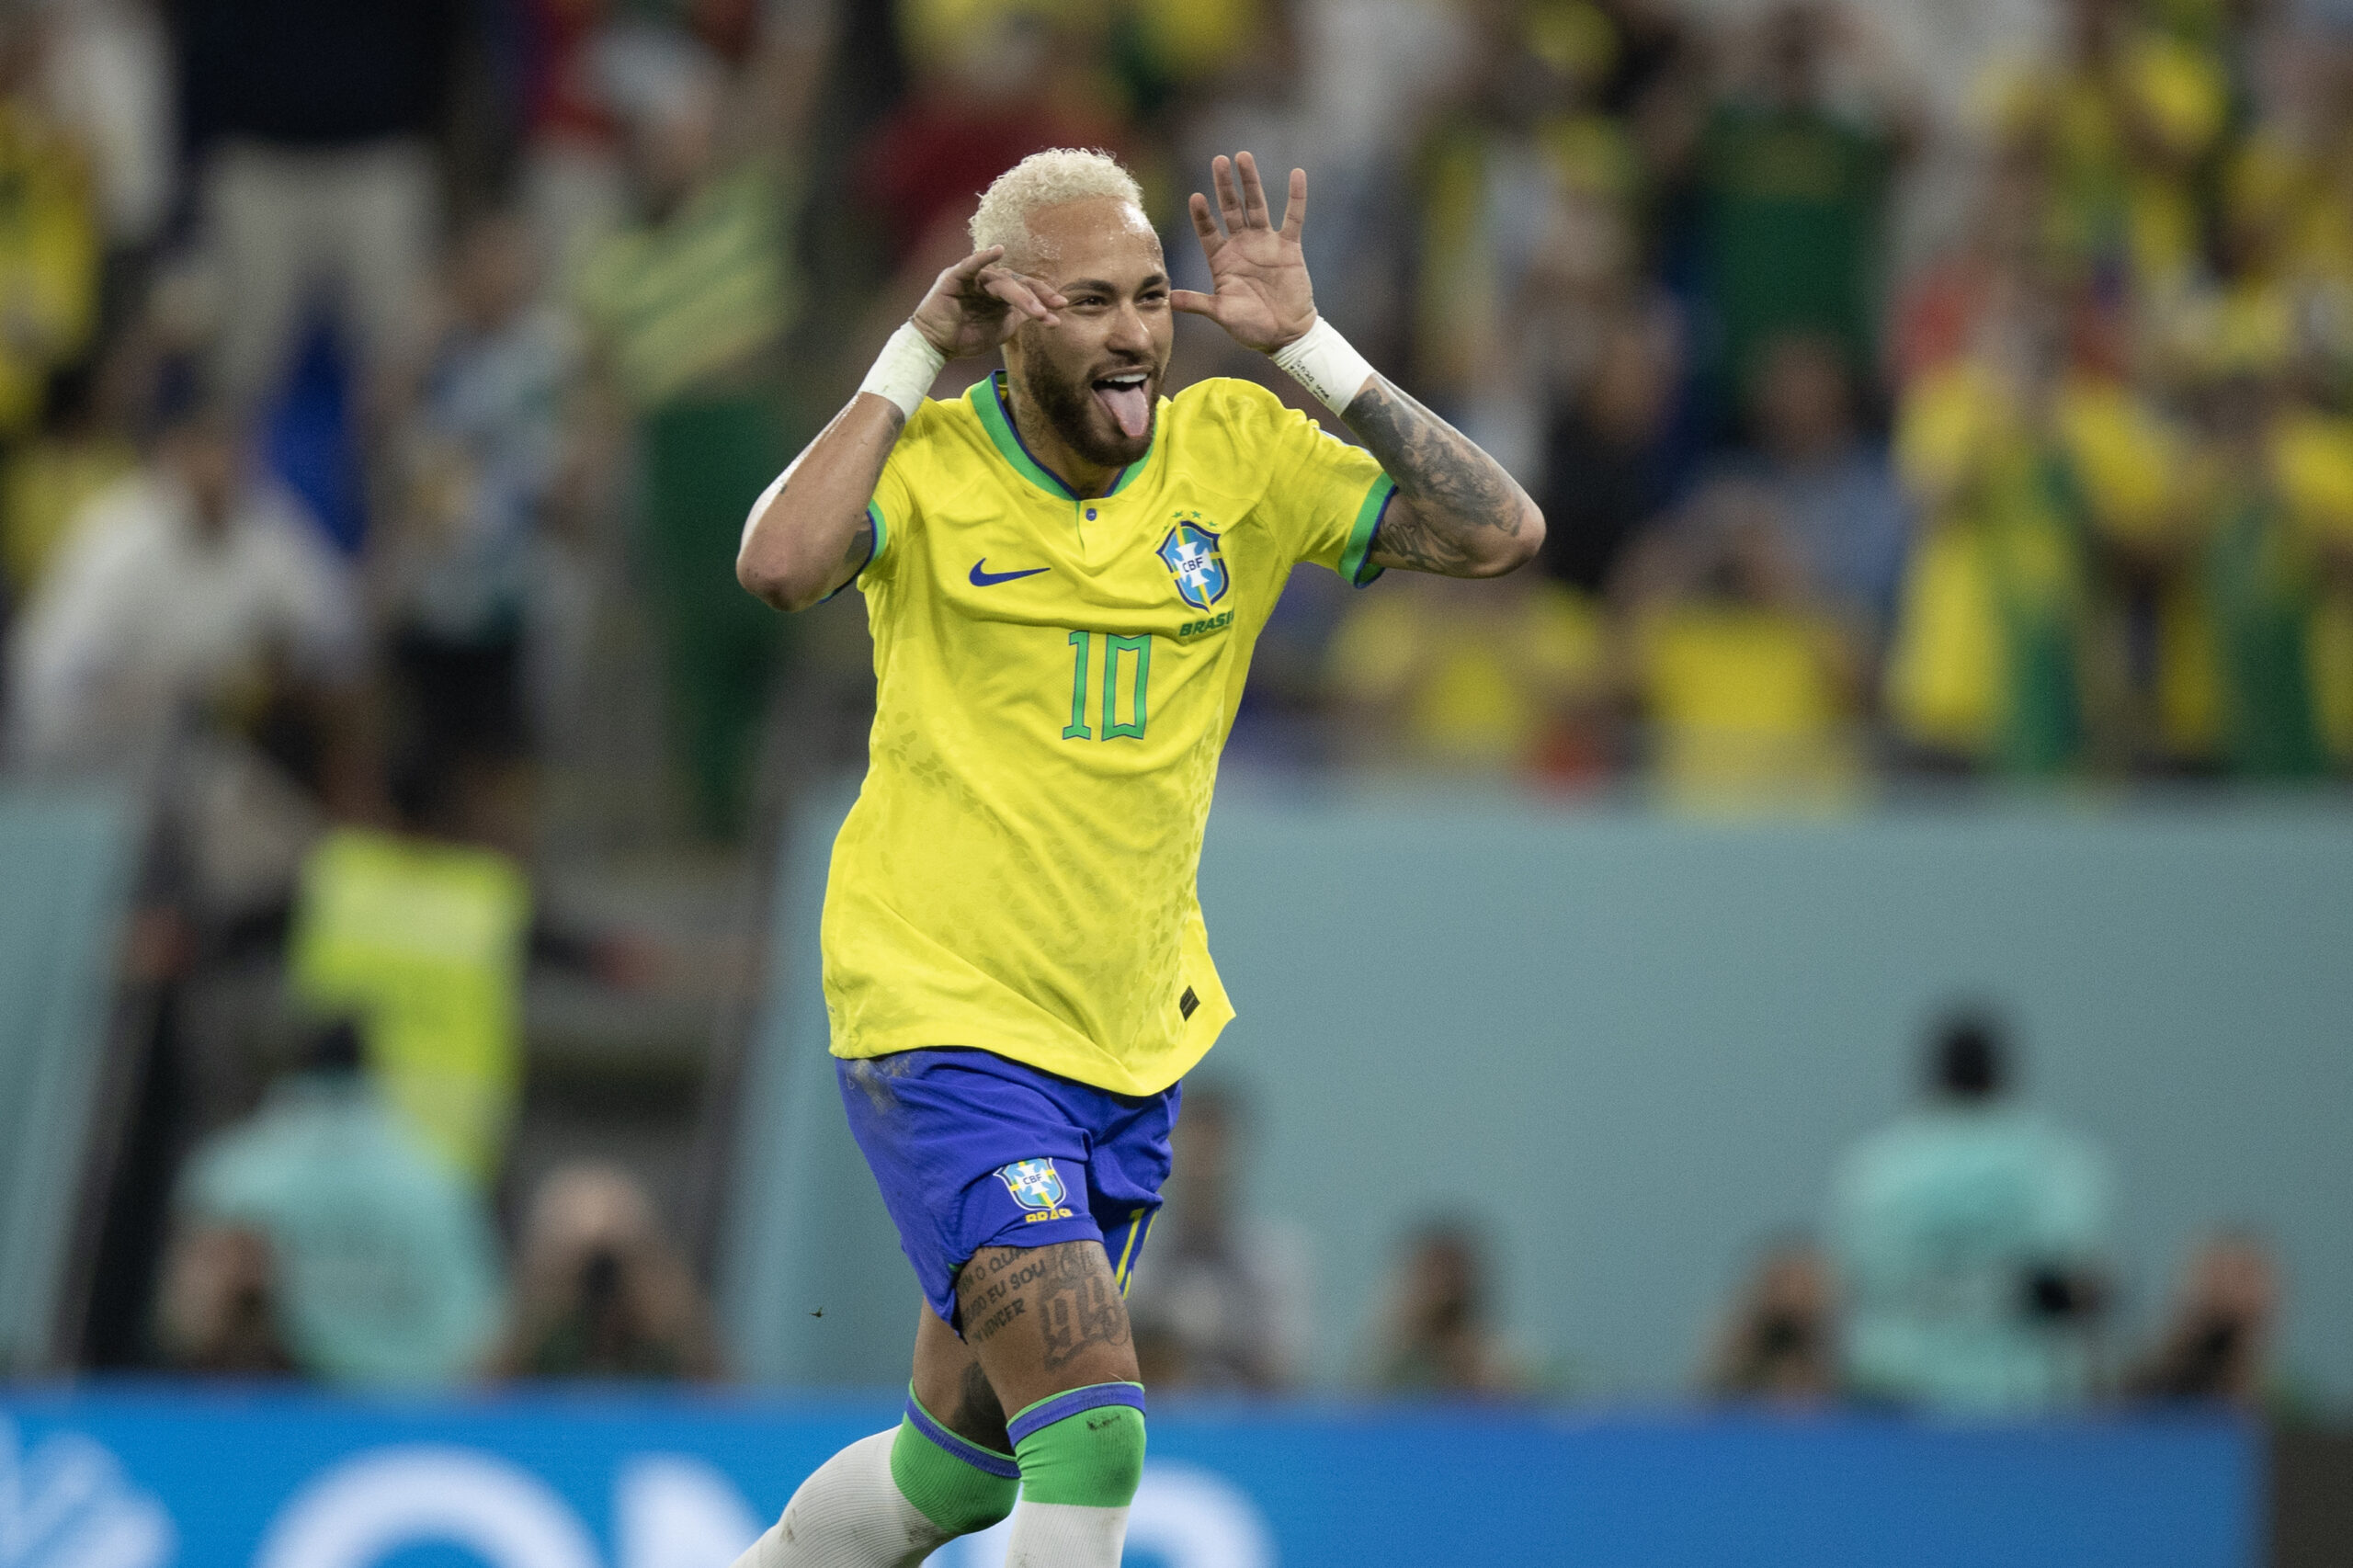 Brasil goleia Coreia do Sul por 5 a 1 em amistoso - PNOTÍCIAS